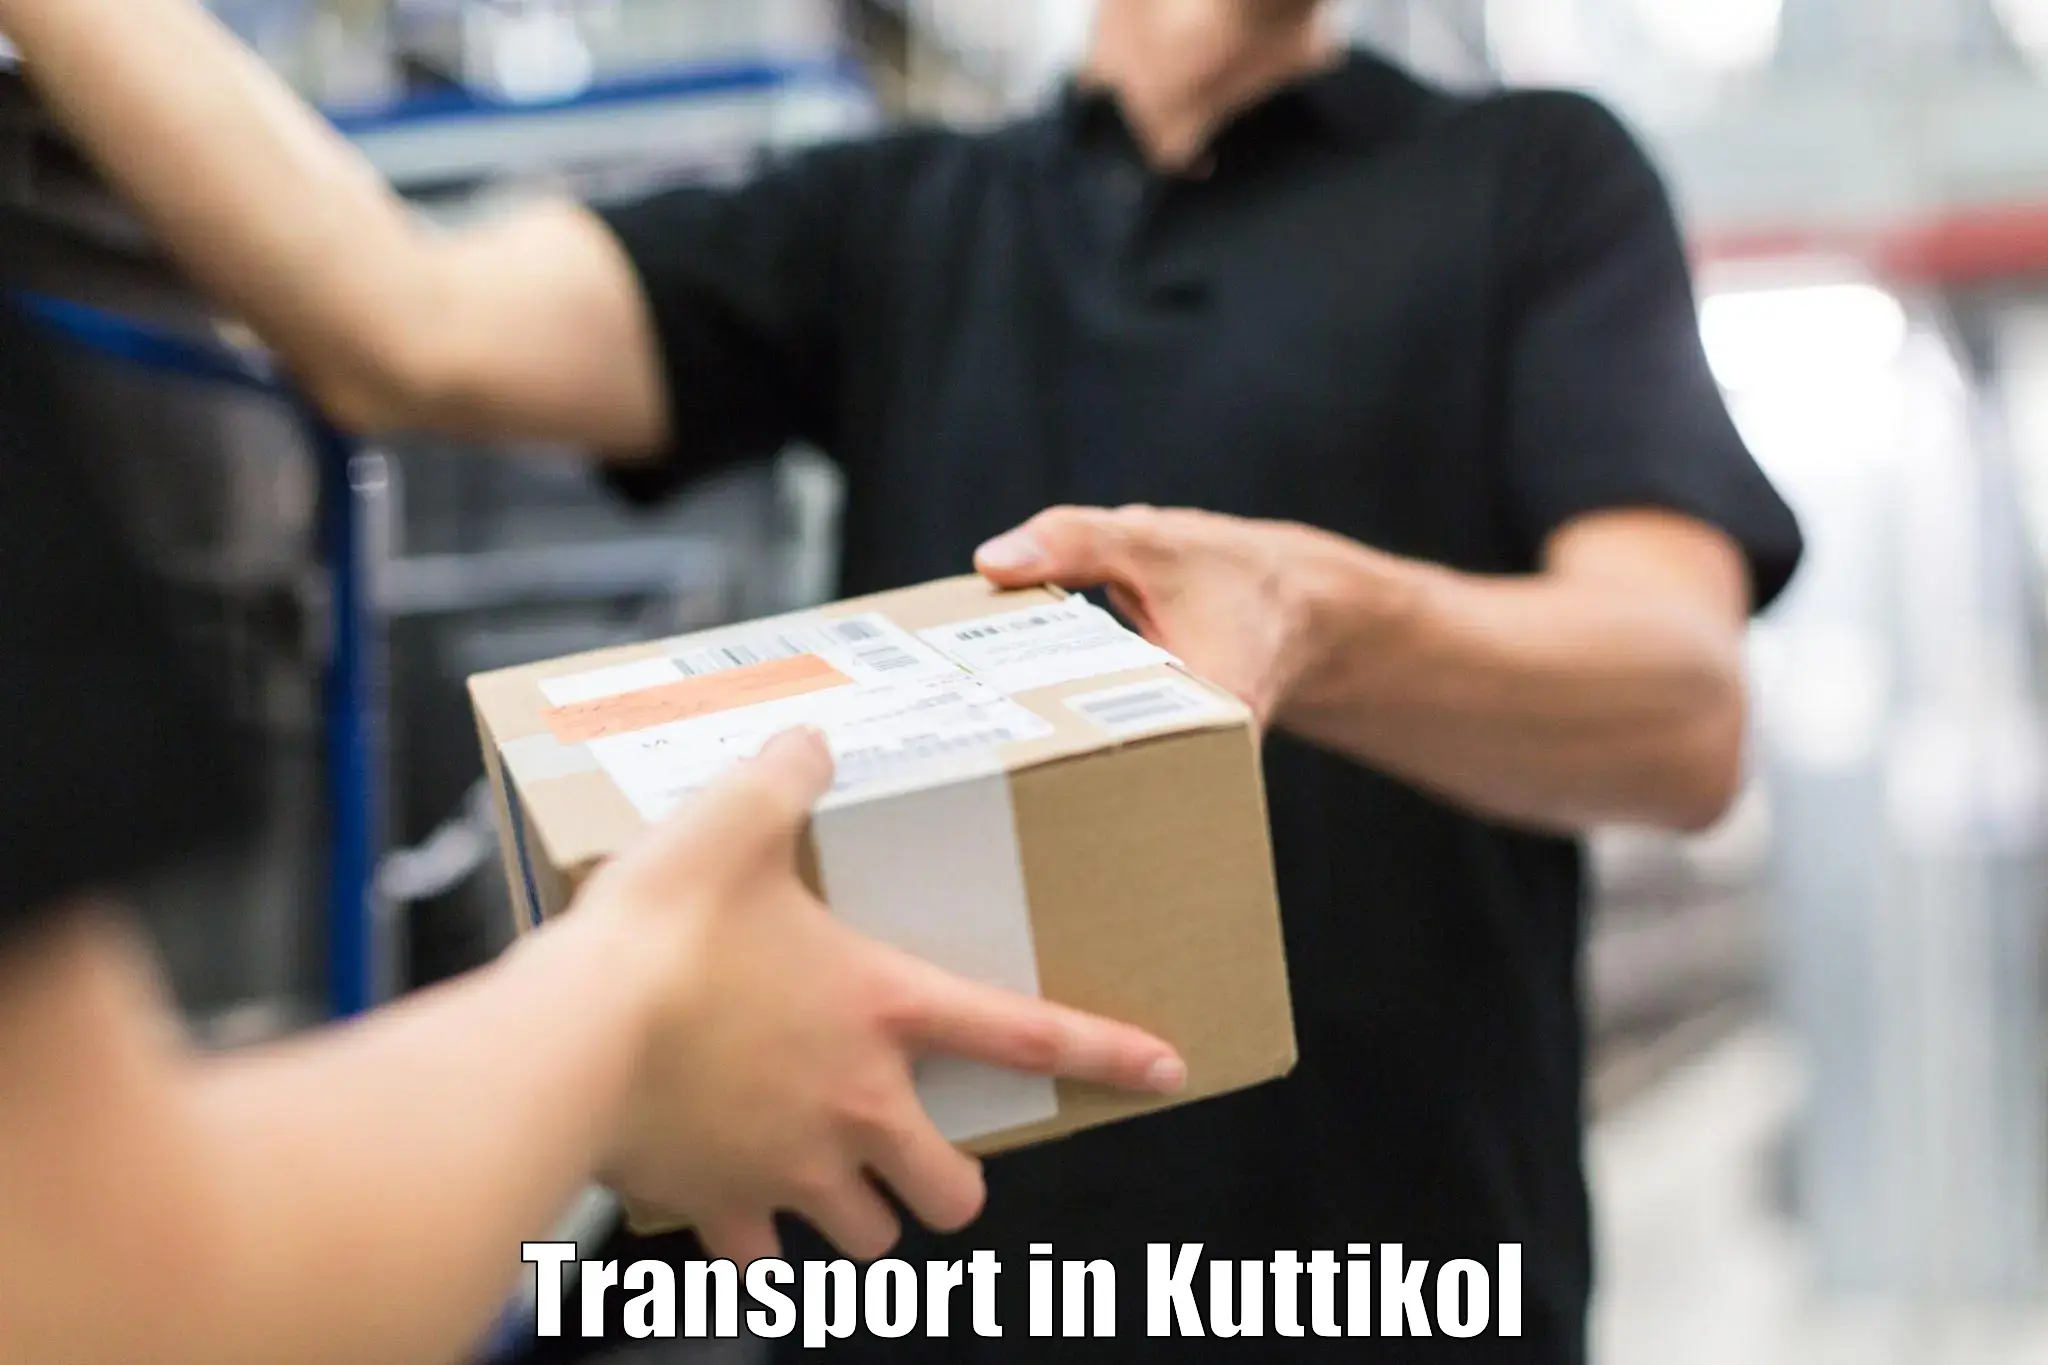 Door to door transport services in Kuttikol